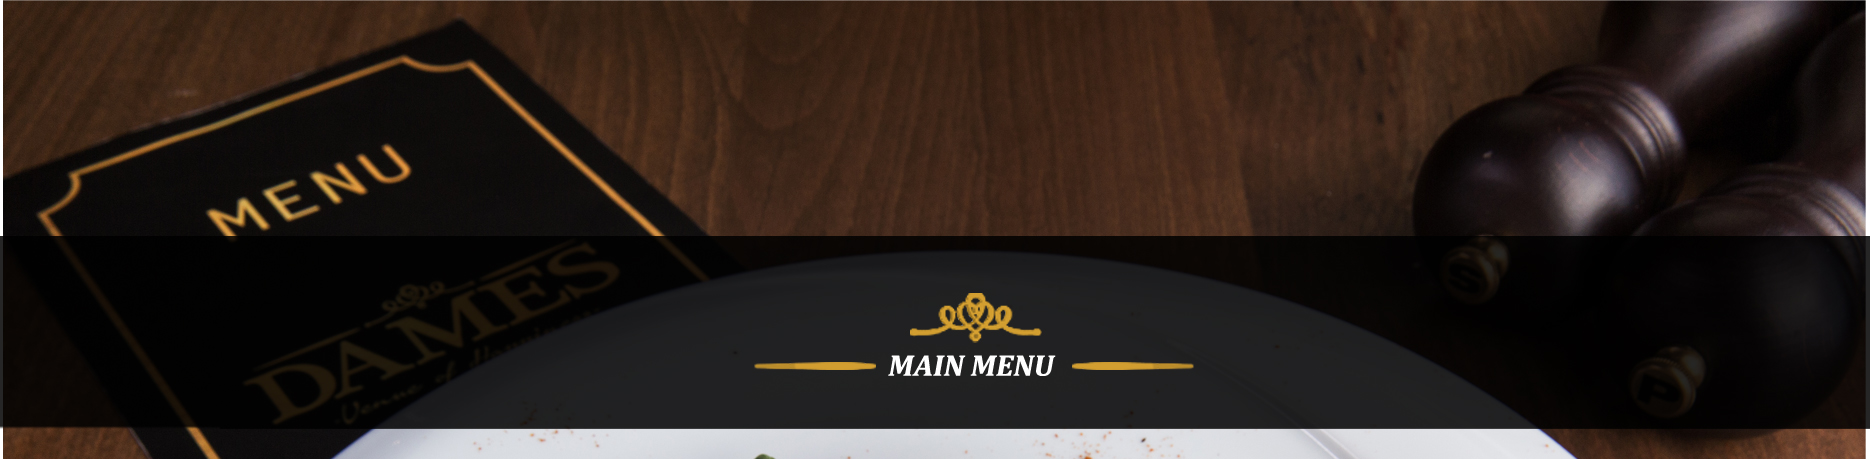 menu-bg